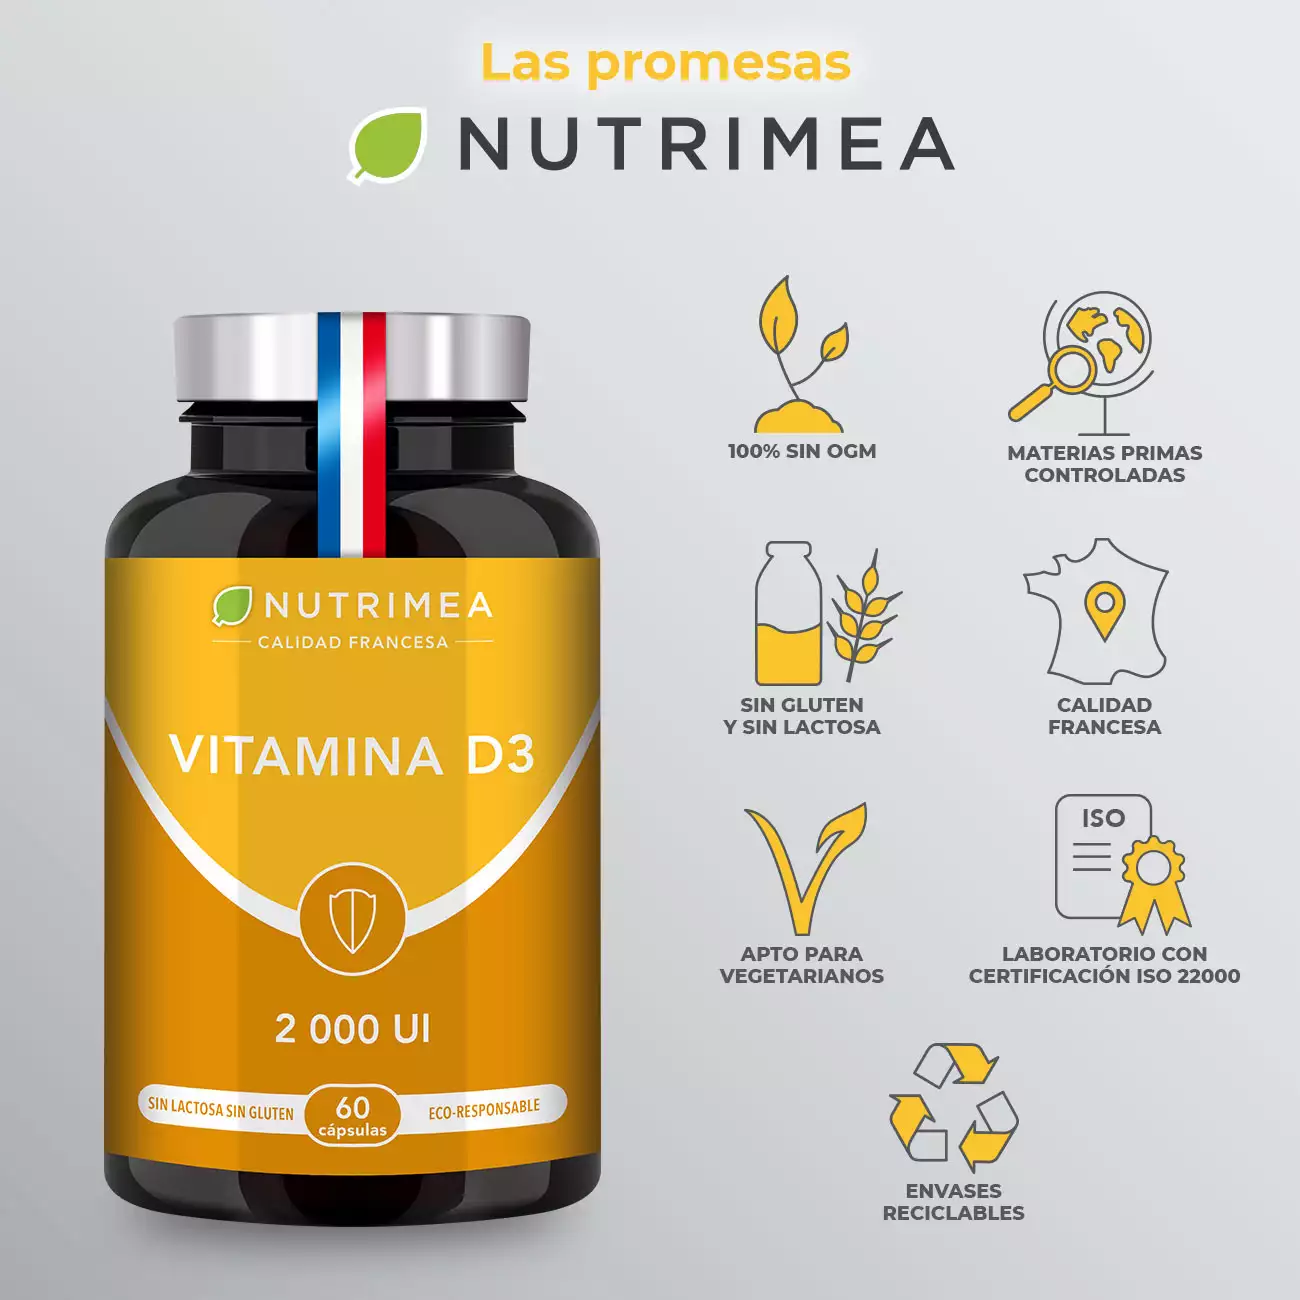 Vitamina D3 como complemento alimenticio 